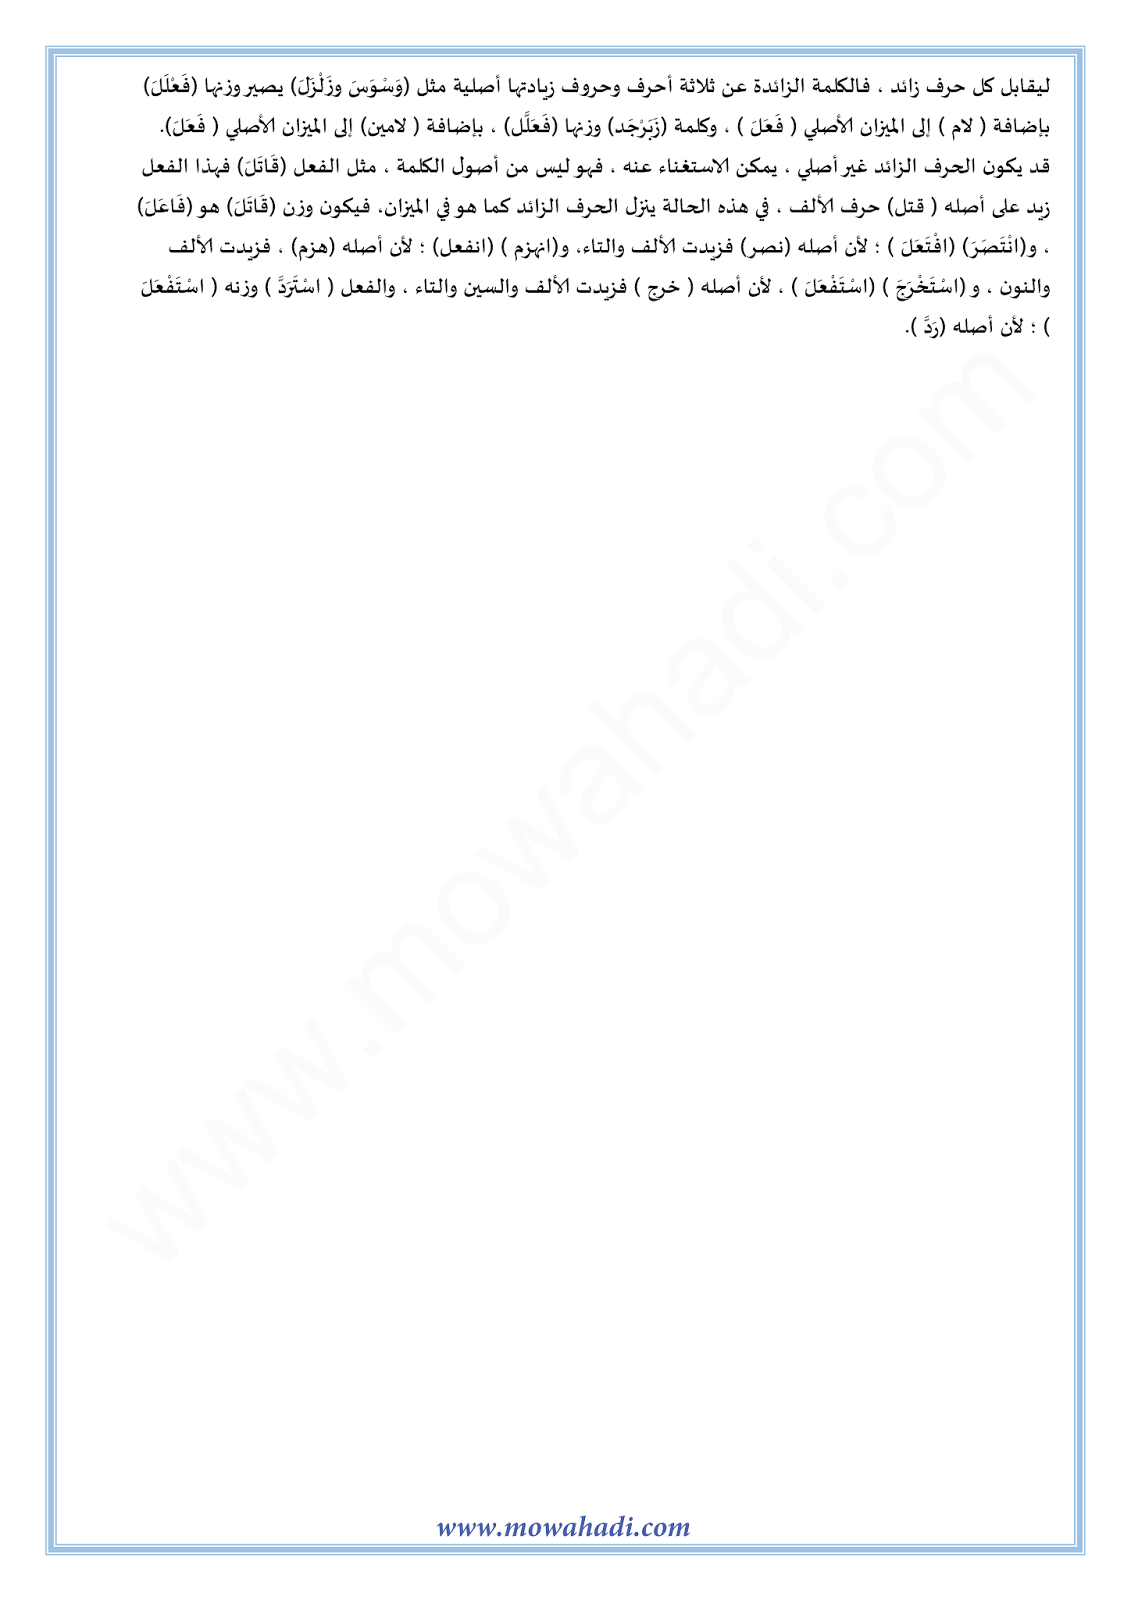 الدرس اللغوي الميزان الصرفي و المجرد و المزيد للسنة الأولى اعدادي في مادة اللغة العربية 1-cours-dars-loghawi1_003